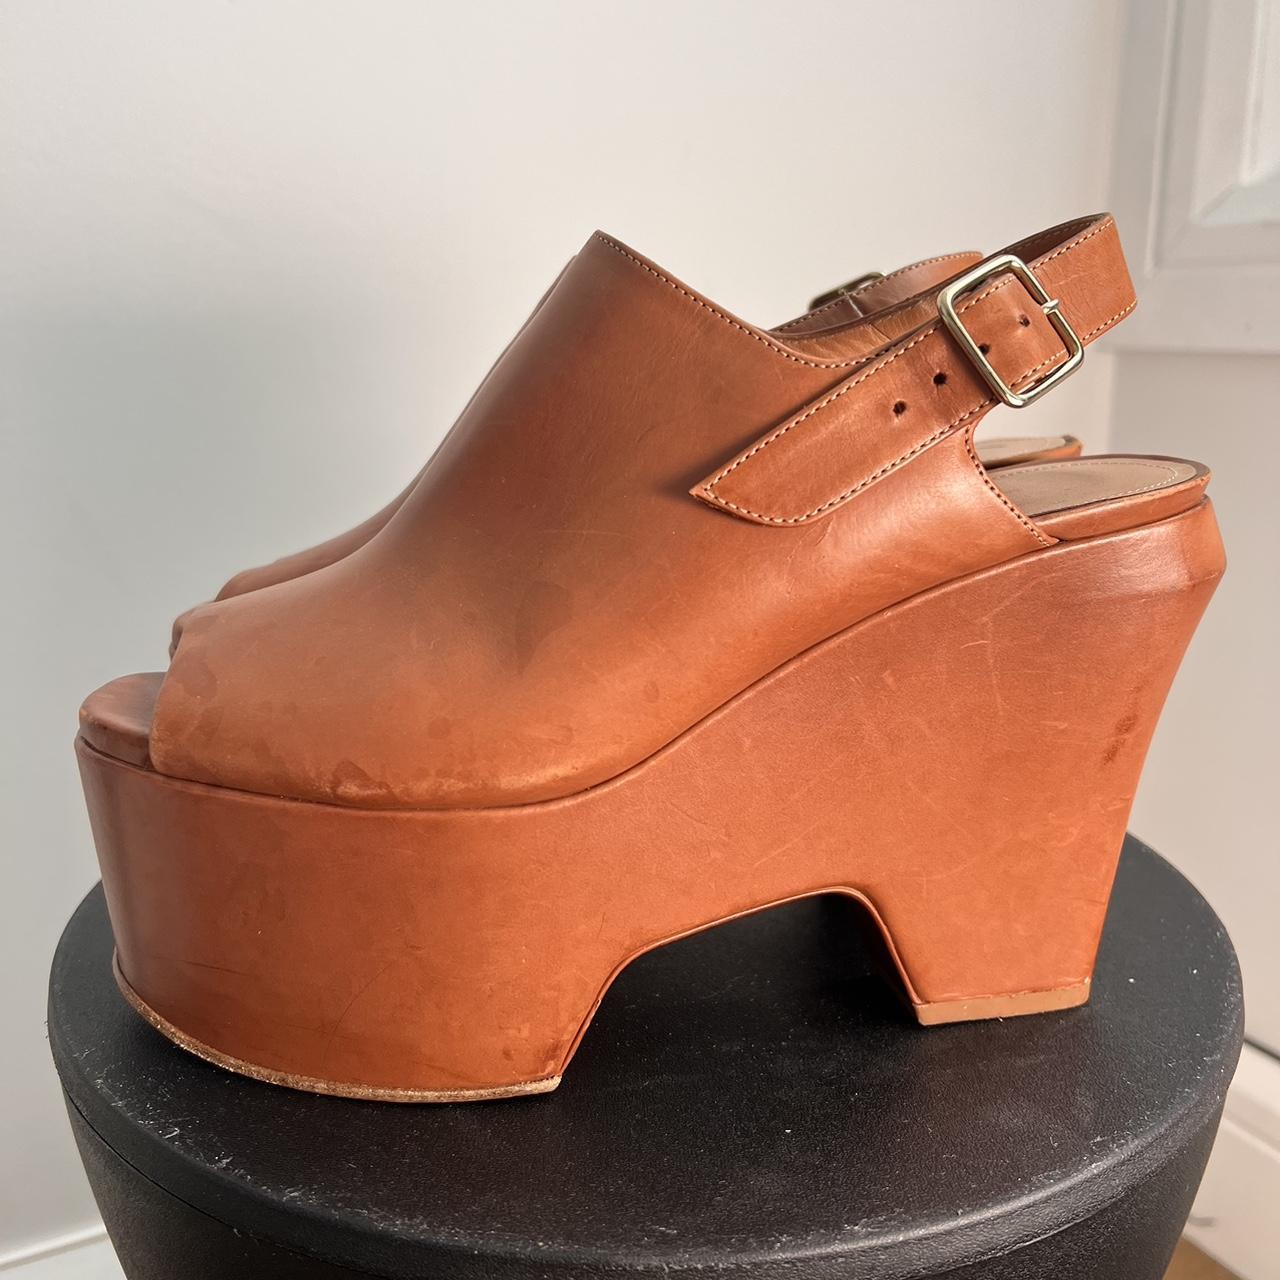 Dries Van Noten Women's Tan and Brown Sandals